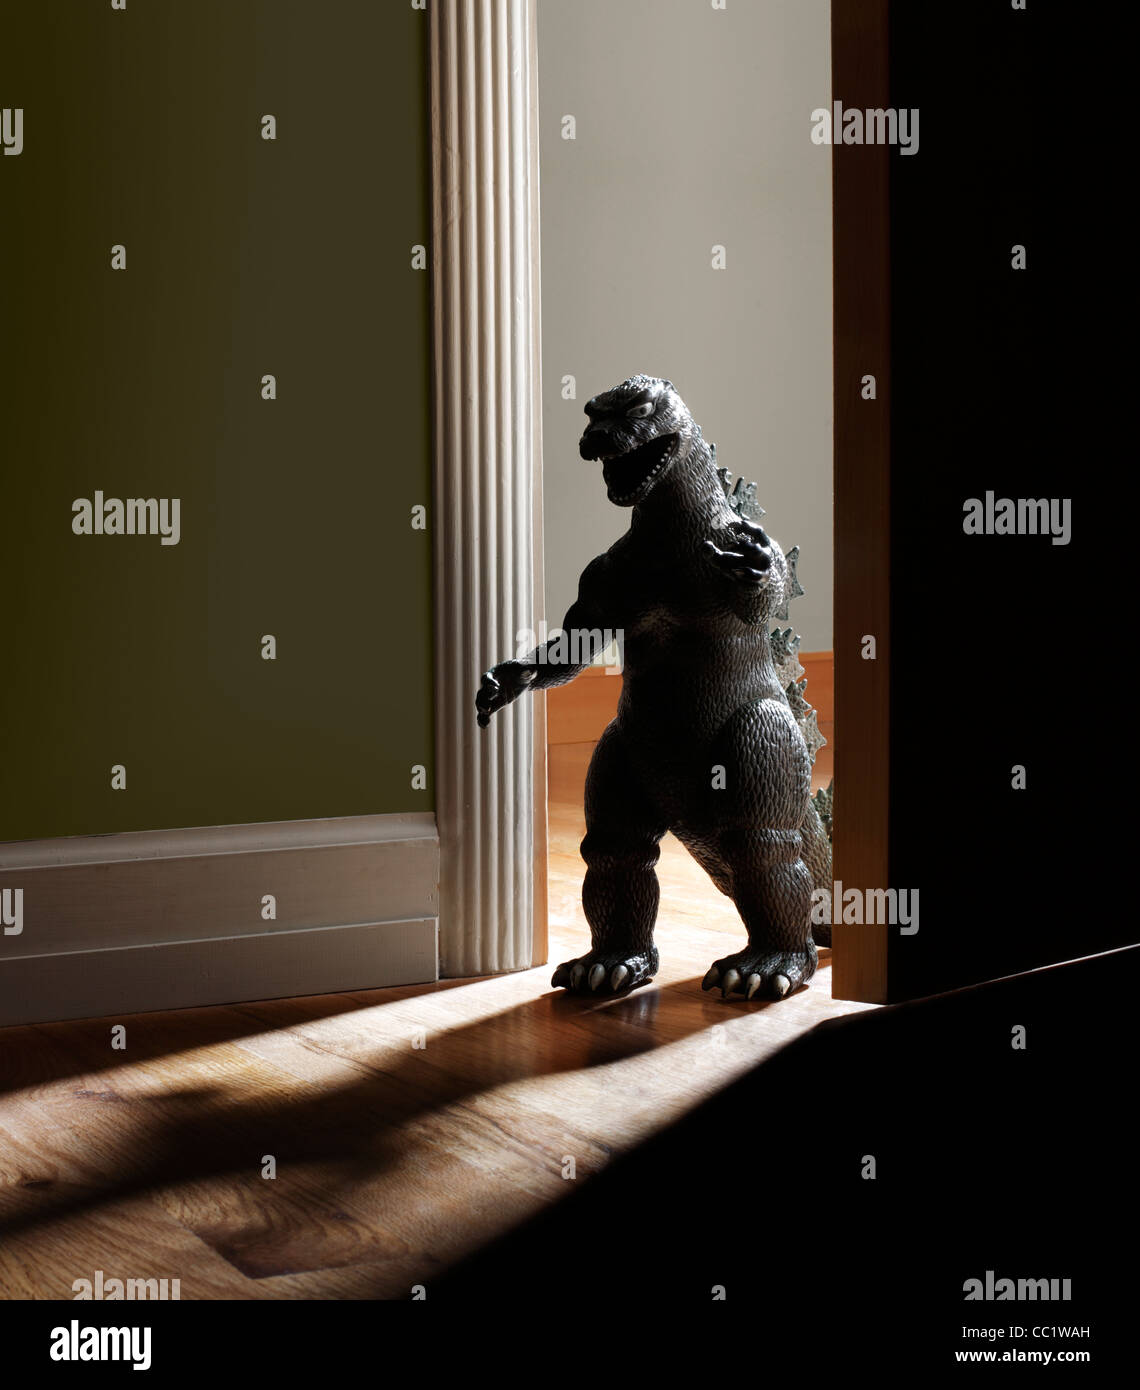 295 Monster Doorway Images, Stock Photos, 3D objects, & Vectors